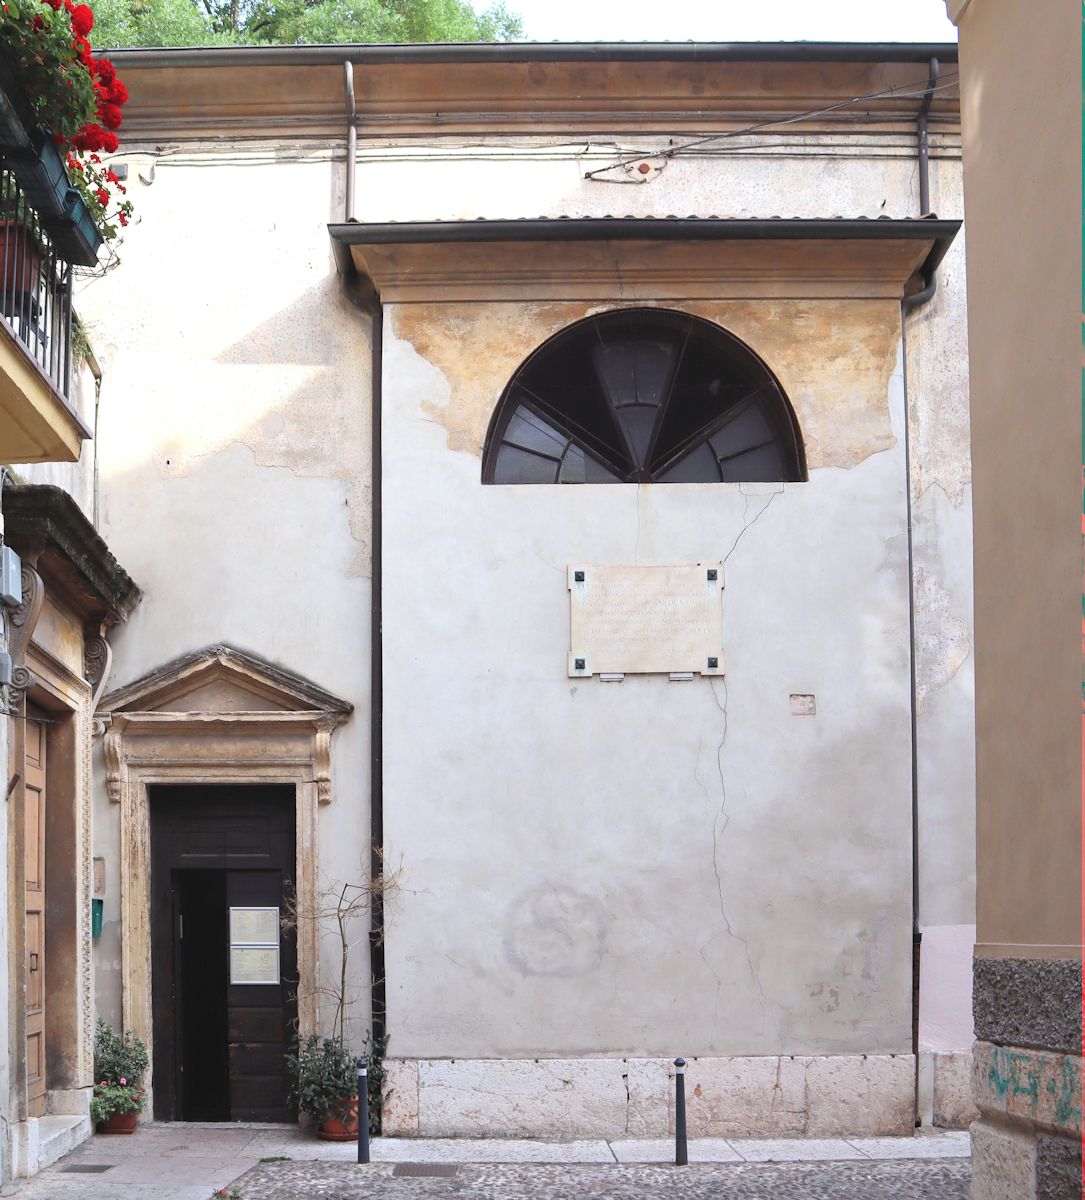 Eingang zur kleinen Kirche San Salvatore Vecchio im Gassengewirr von Verona, heute Sitz der russisch-Orthodoxen Gemeinde